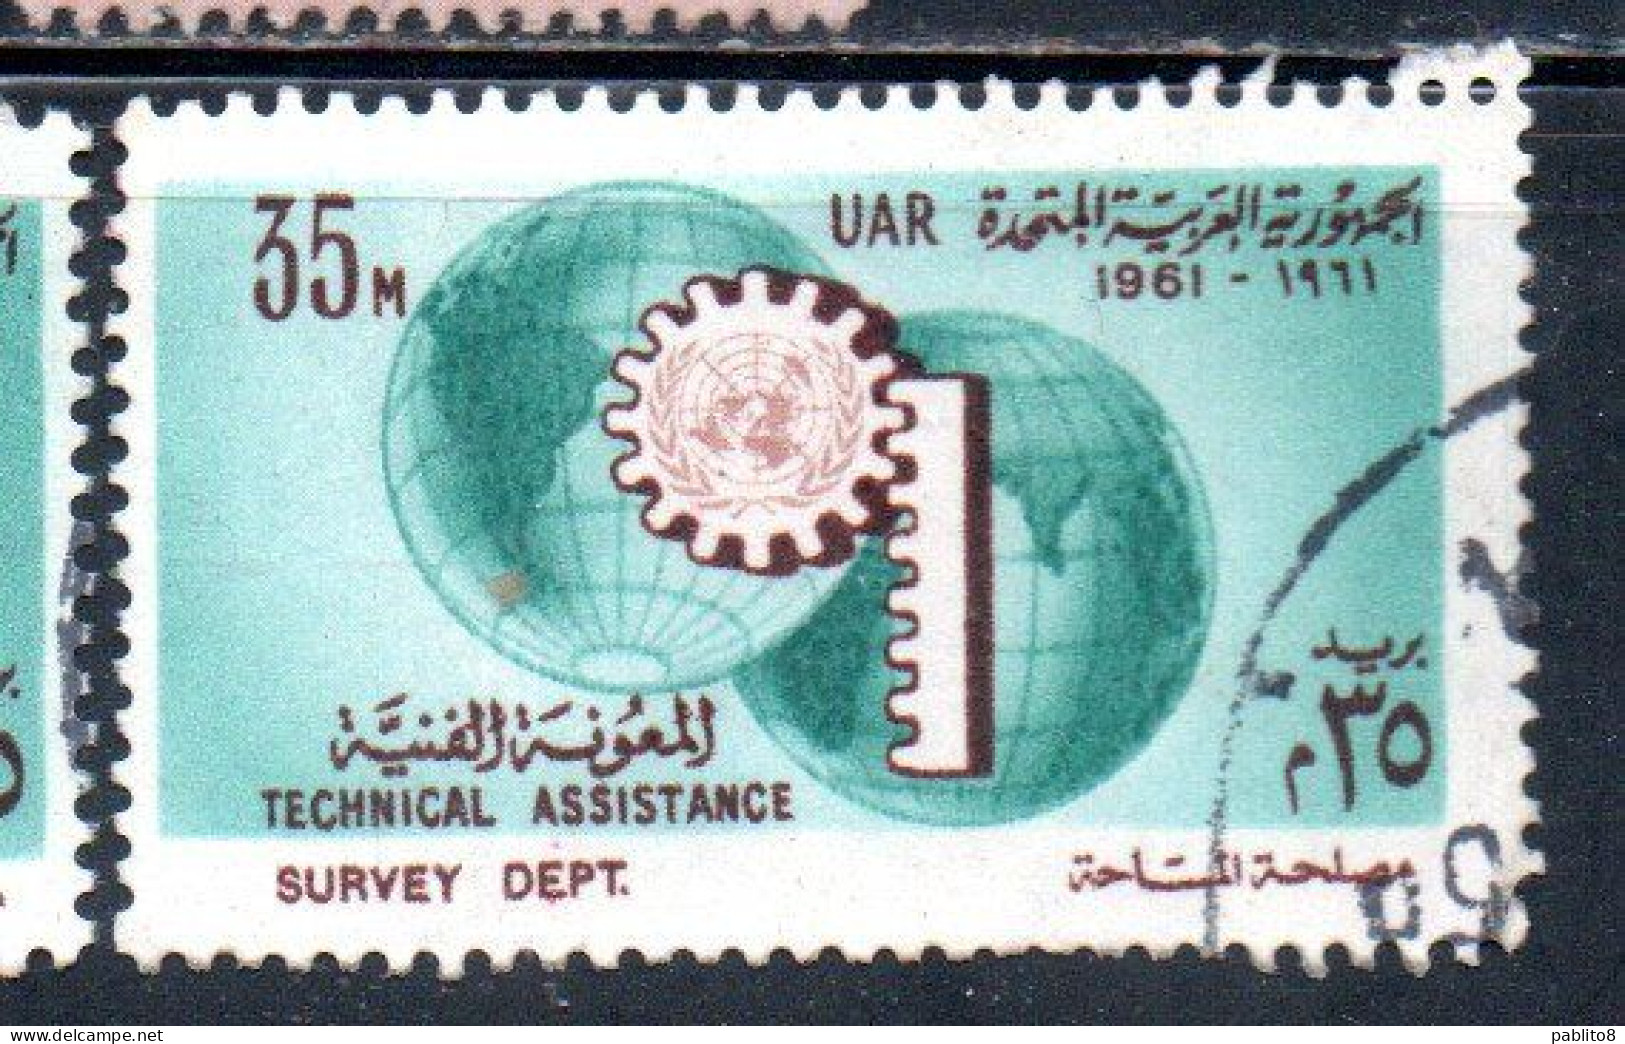 UAR EGYPT EGITTO 1961 UN ONU TECHNICAL ASSISTENCE PROGRAM AND 16th ANNIVERSARY 35m USED USATO OBLITERE' - Gebraucht